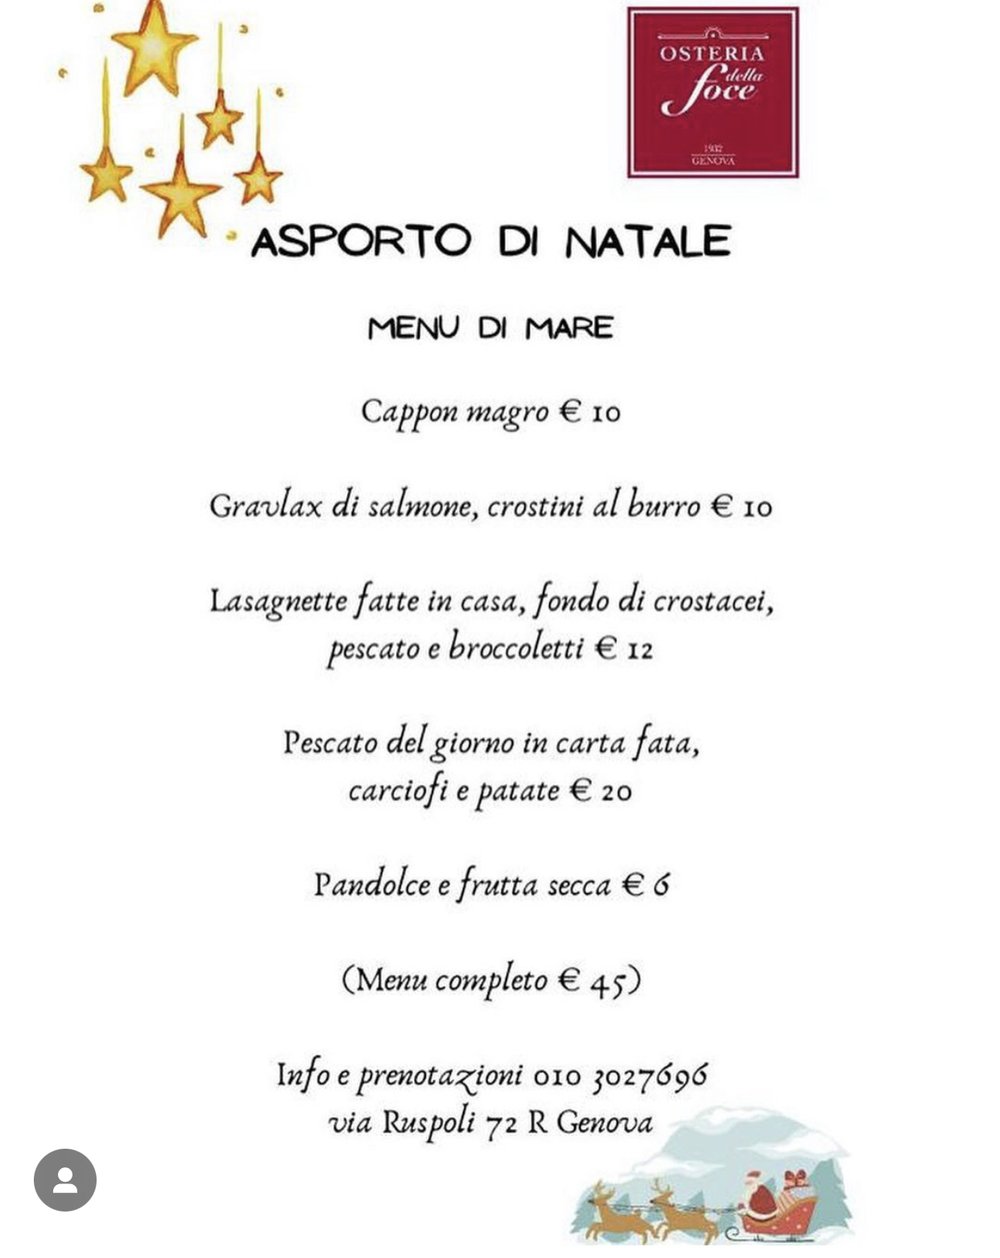 menu-natale-genova-osteria-della-foce-1.jpg